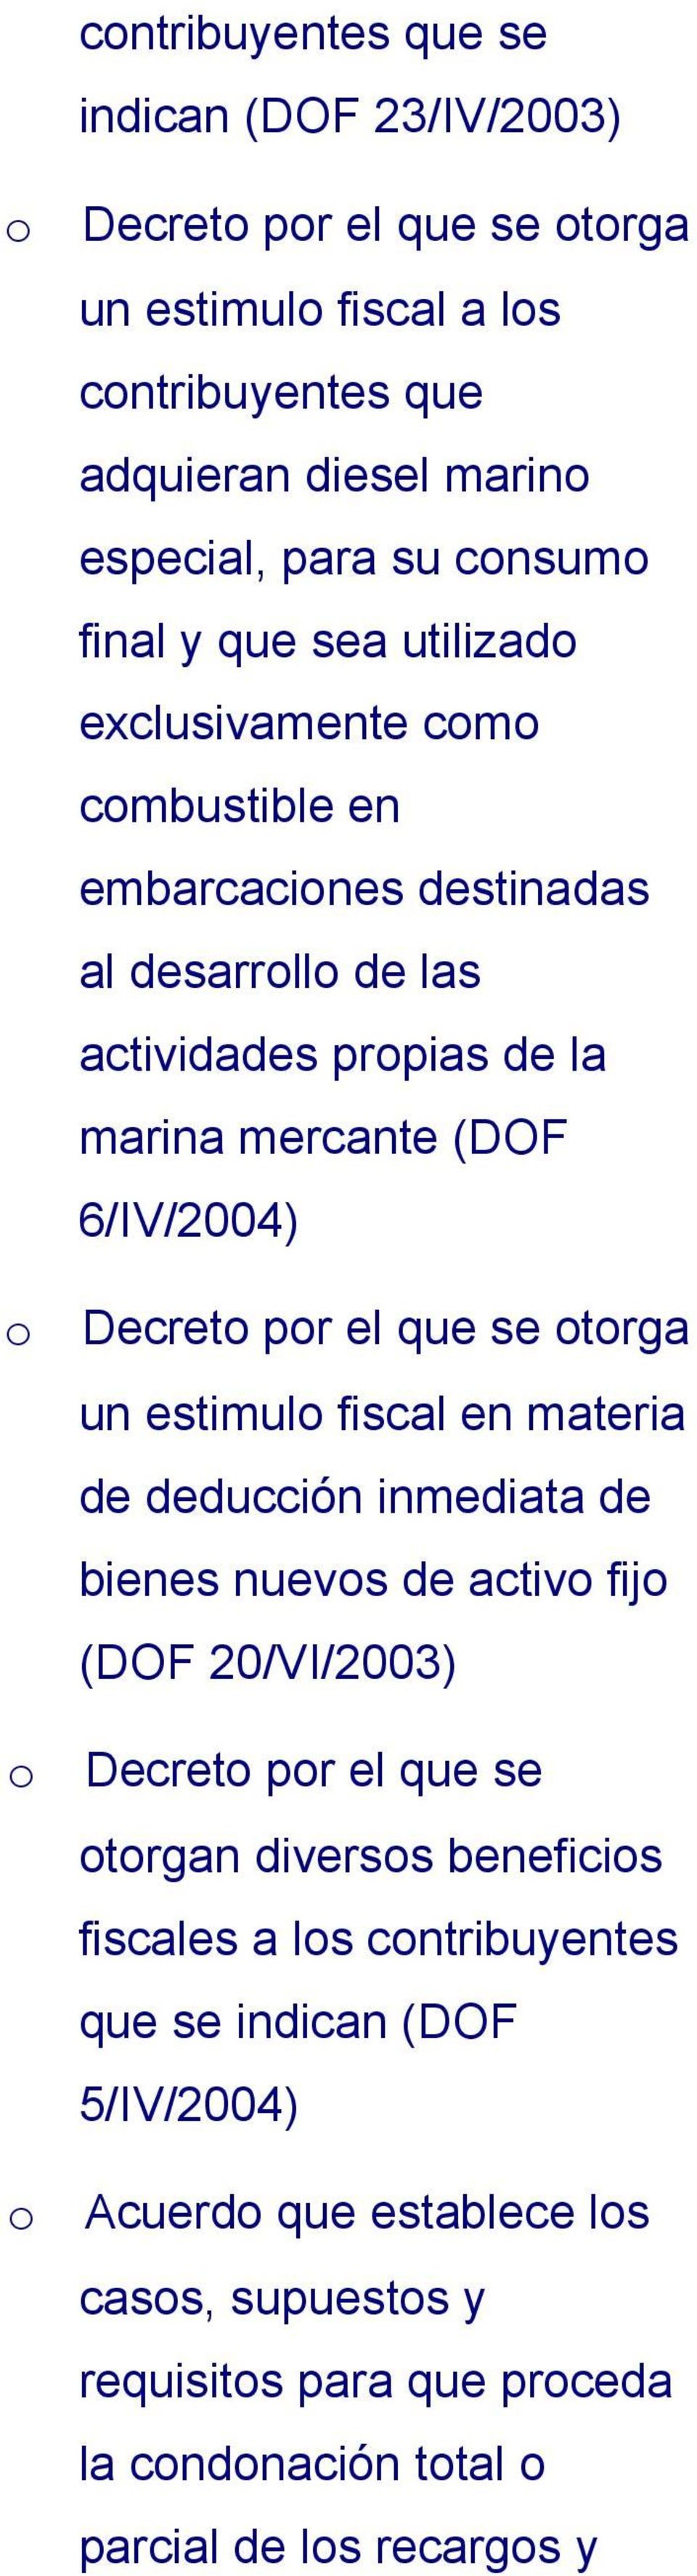 Decret pr el que se trga un estimul fiscal en materia de deducción inmediata de bienes nuevs de activ fij (DOF 20/VI/2003) Decret pr el que se trgan diverss